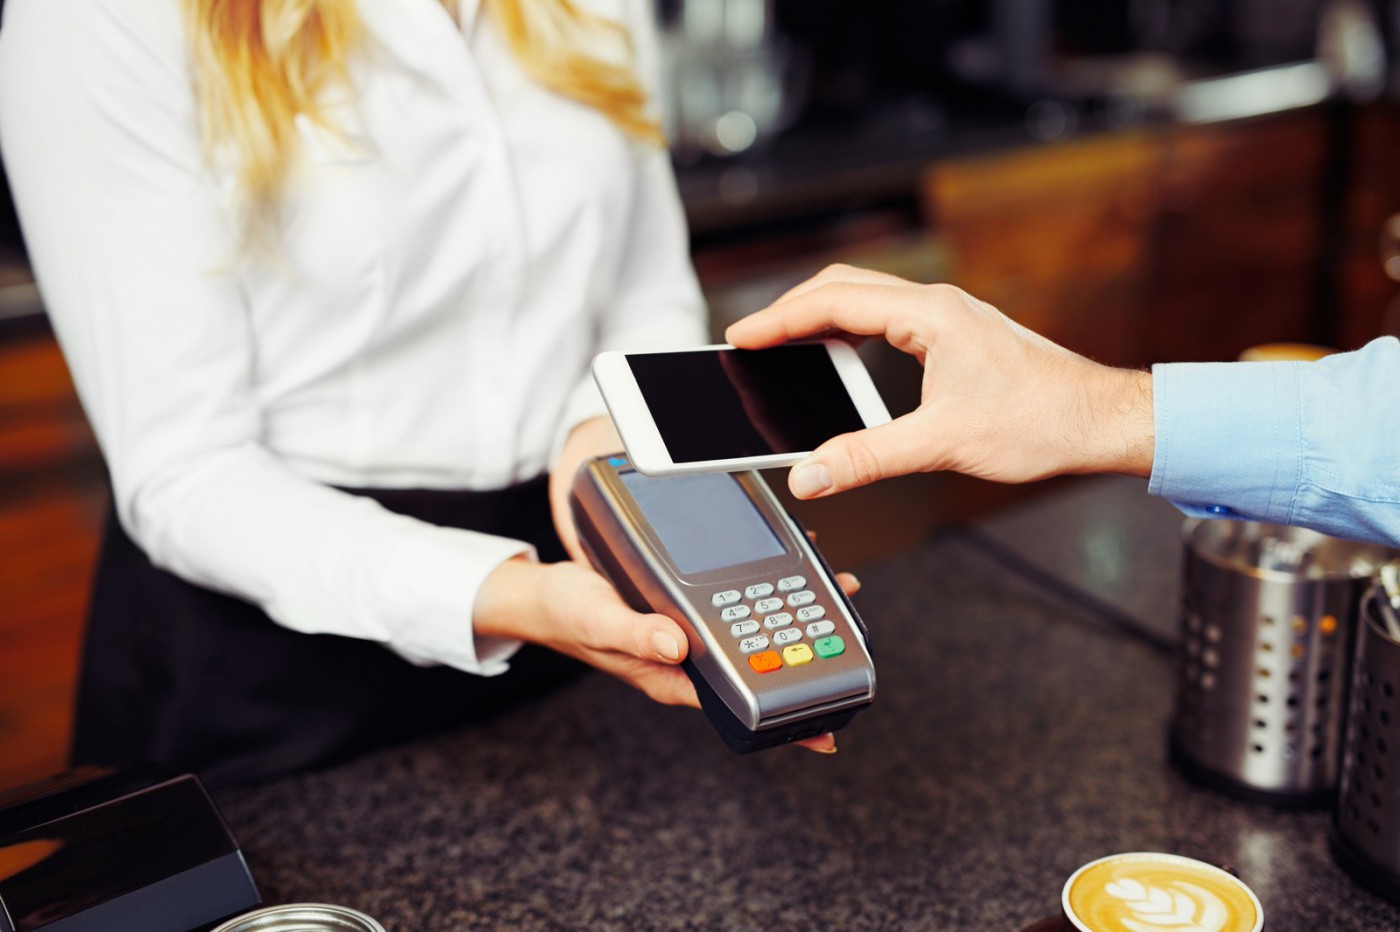 Оплату с помощью NFC в системе быстрых платежей начнут тестировать с 1 июня